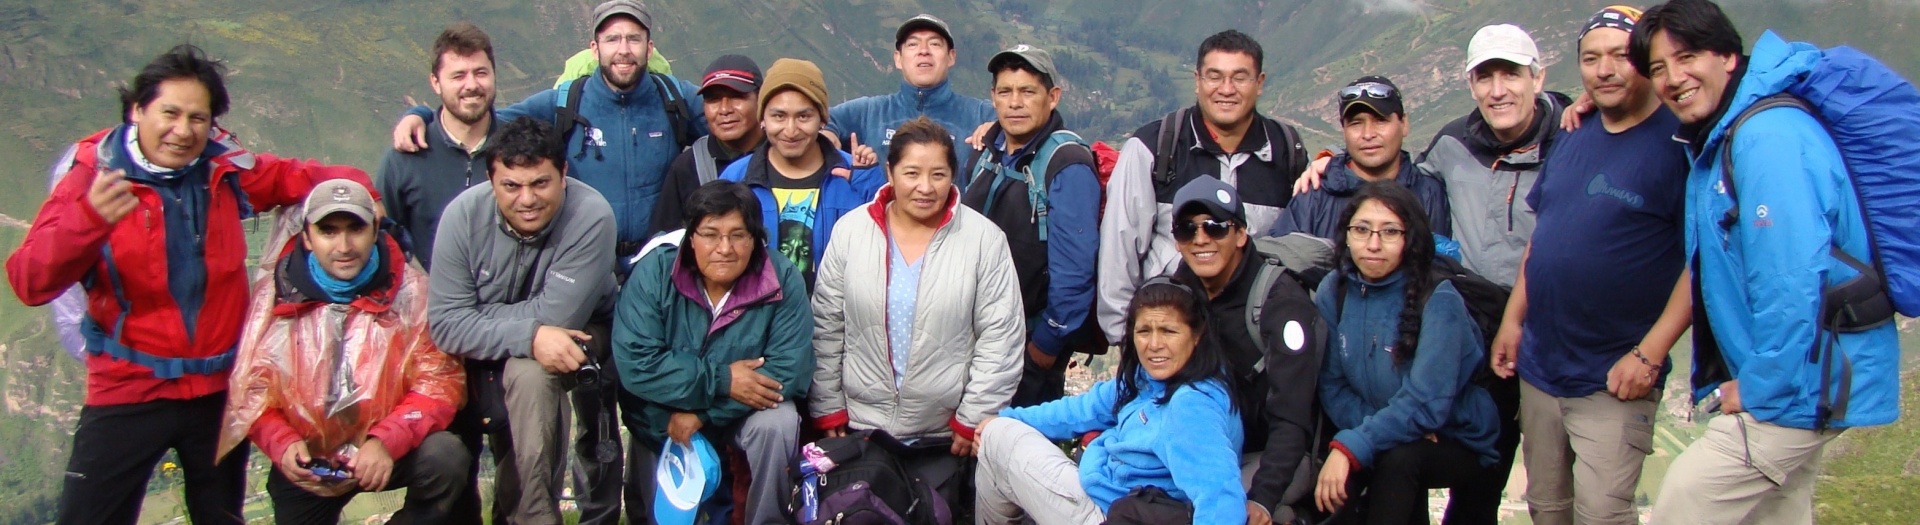 Notre équipe Altaï Perú